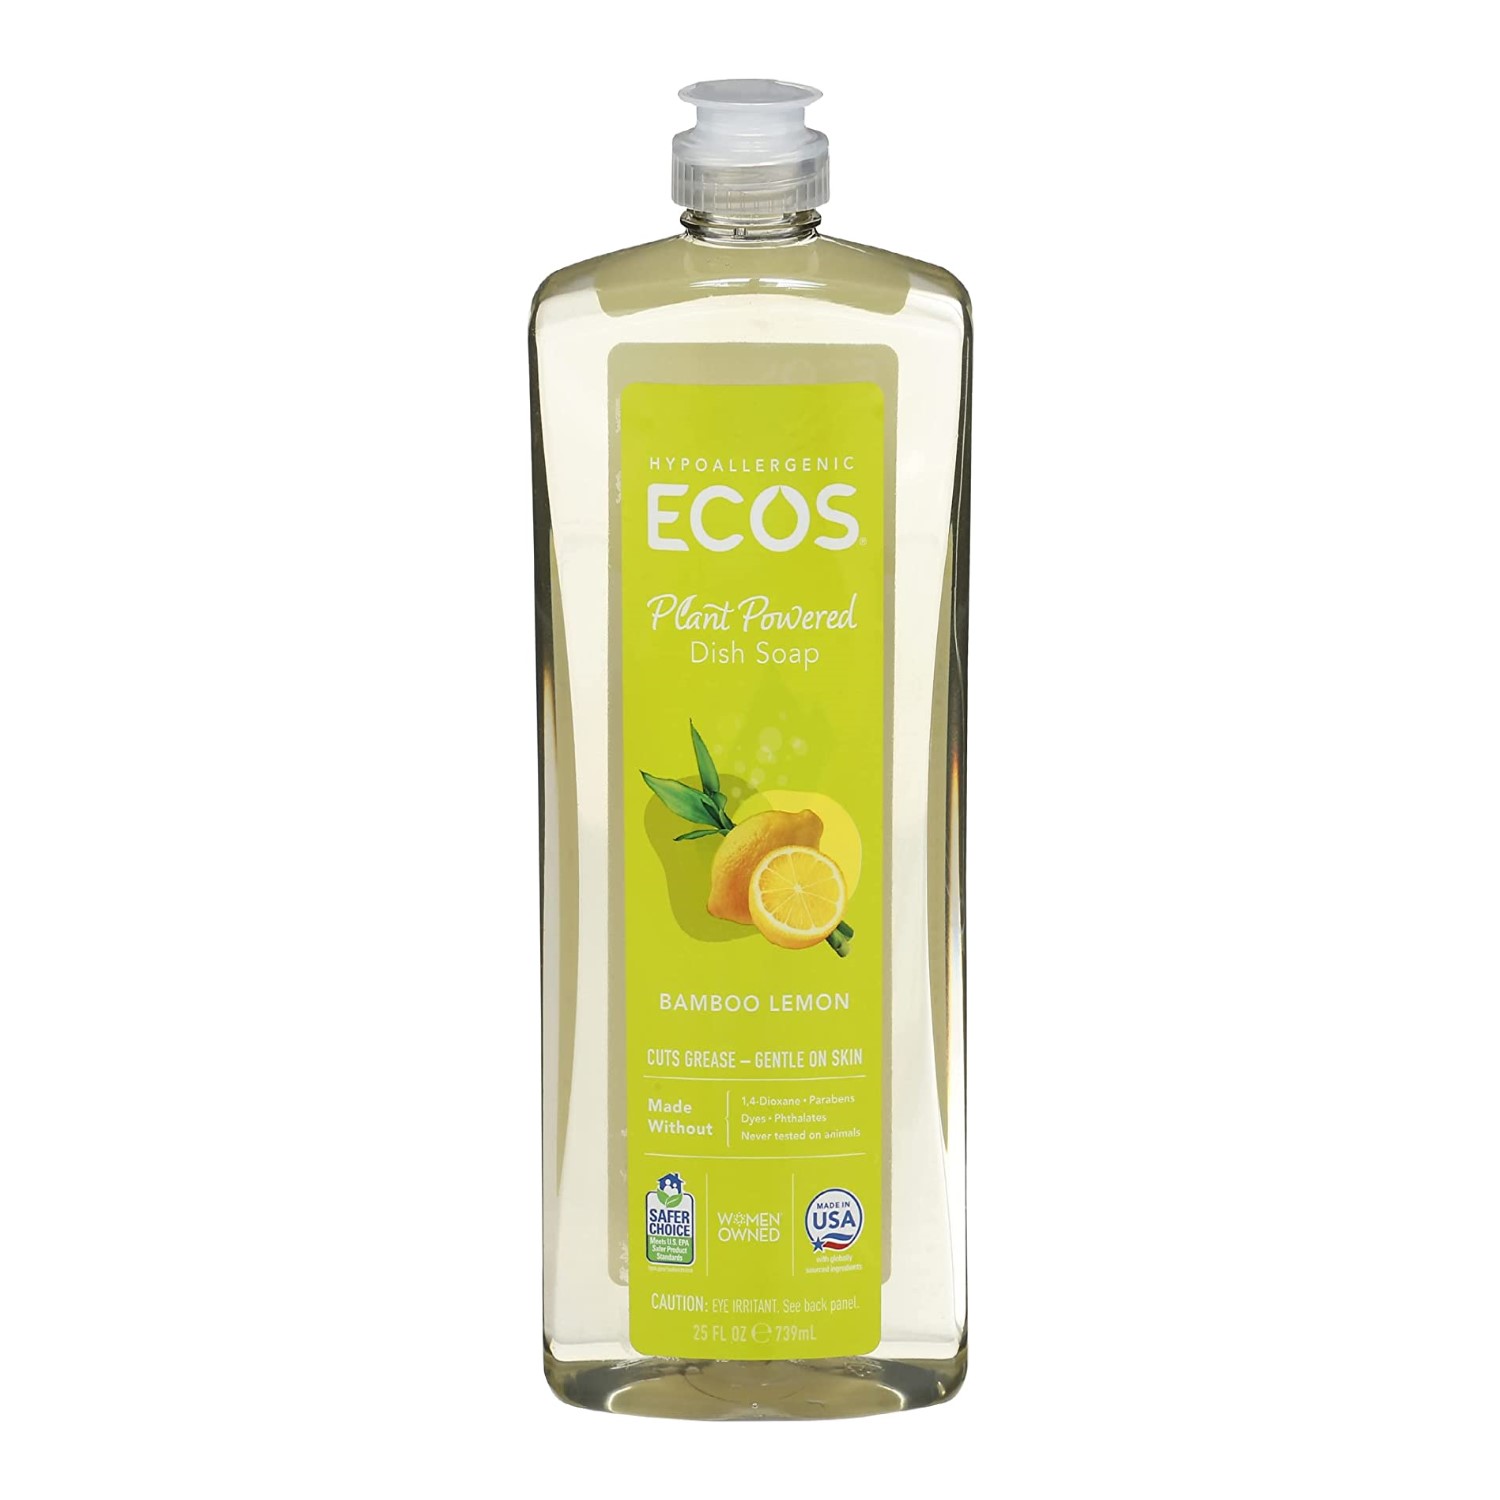 Bottle of ECOS Dish Soap, Bamboo Lemon - photo